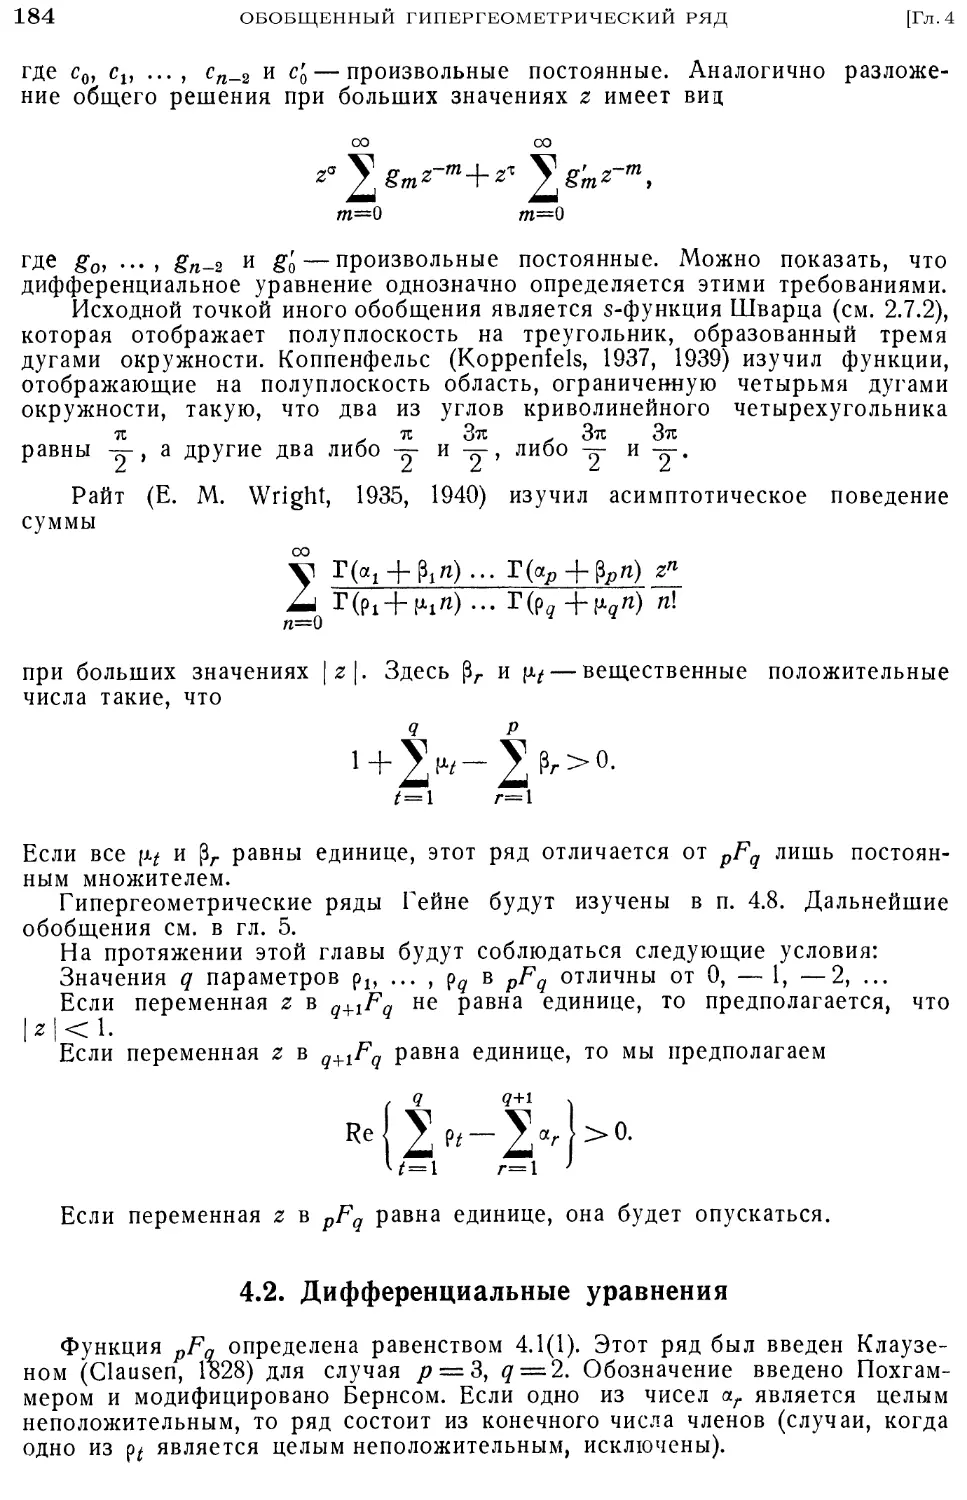 4.2. Дифференциальные уравнения